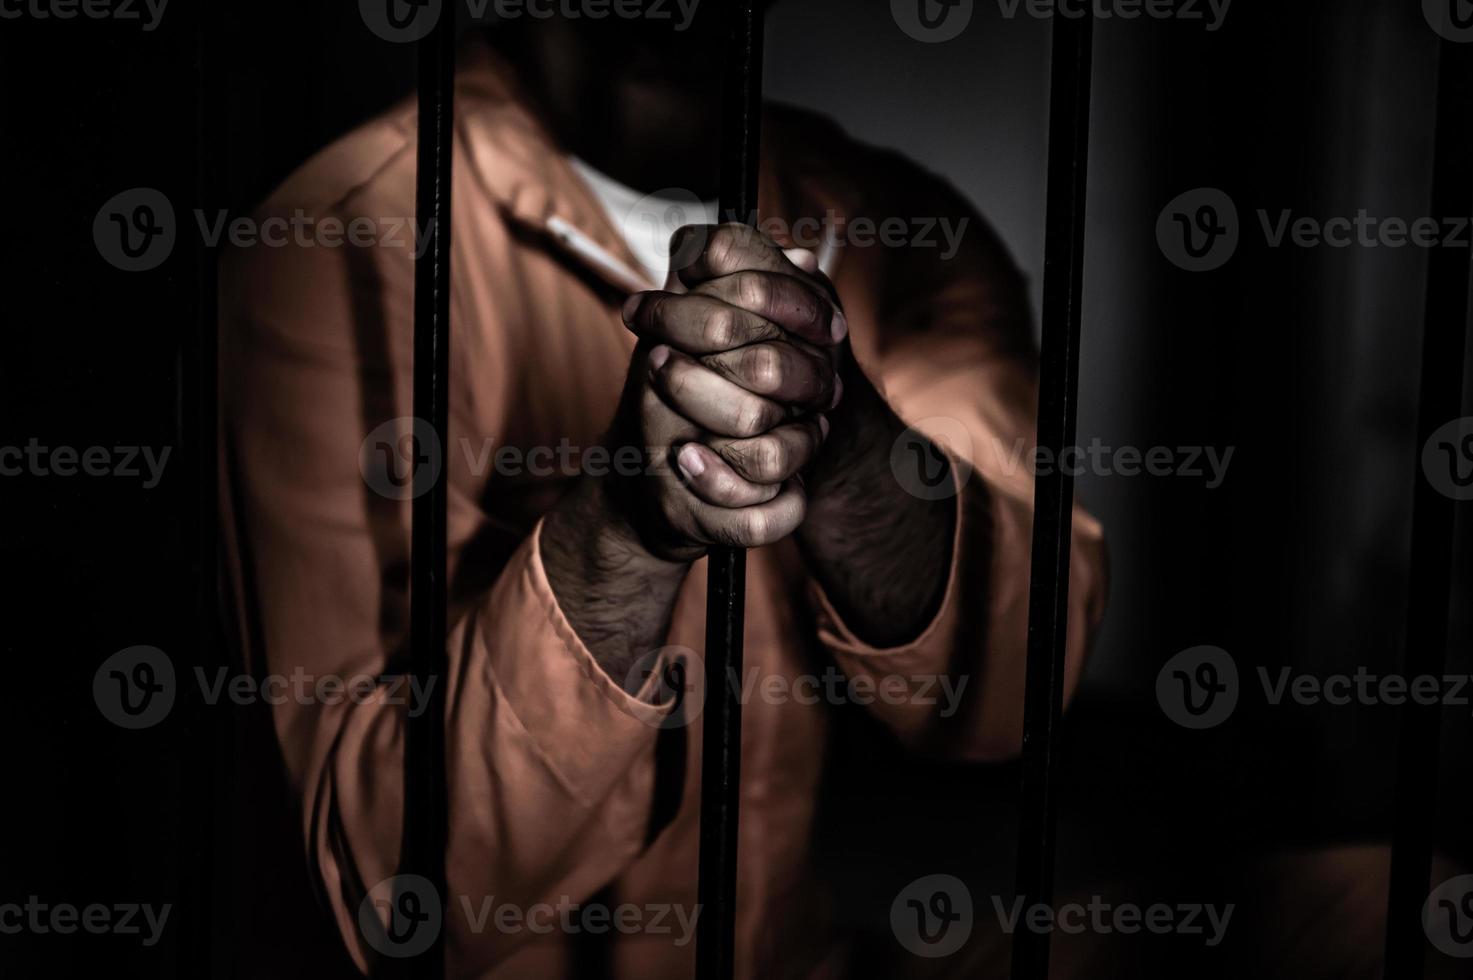 homme asiatique désespéré à la prison de fer, concept de prisonnier, peuple thaïlandais, espoir d'être libre, prisonniers sérieux emprisonnés dans la prison photo